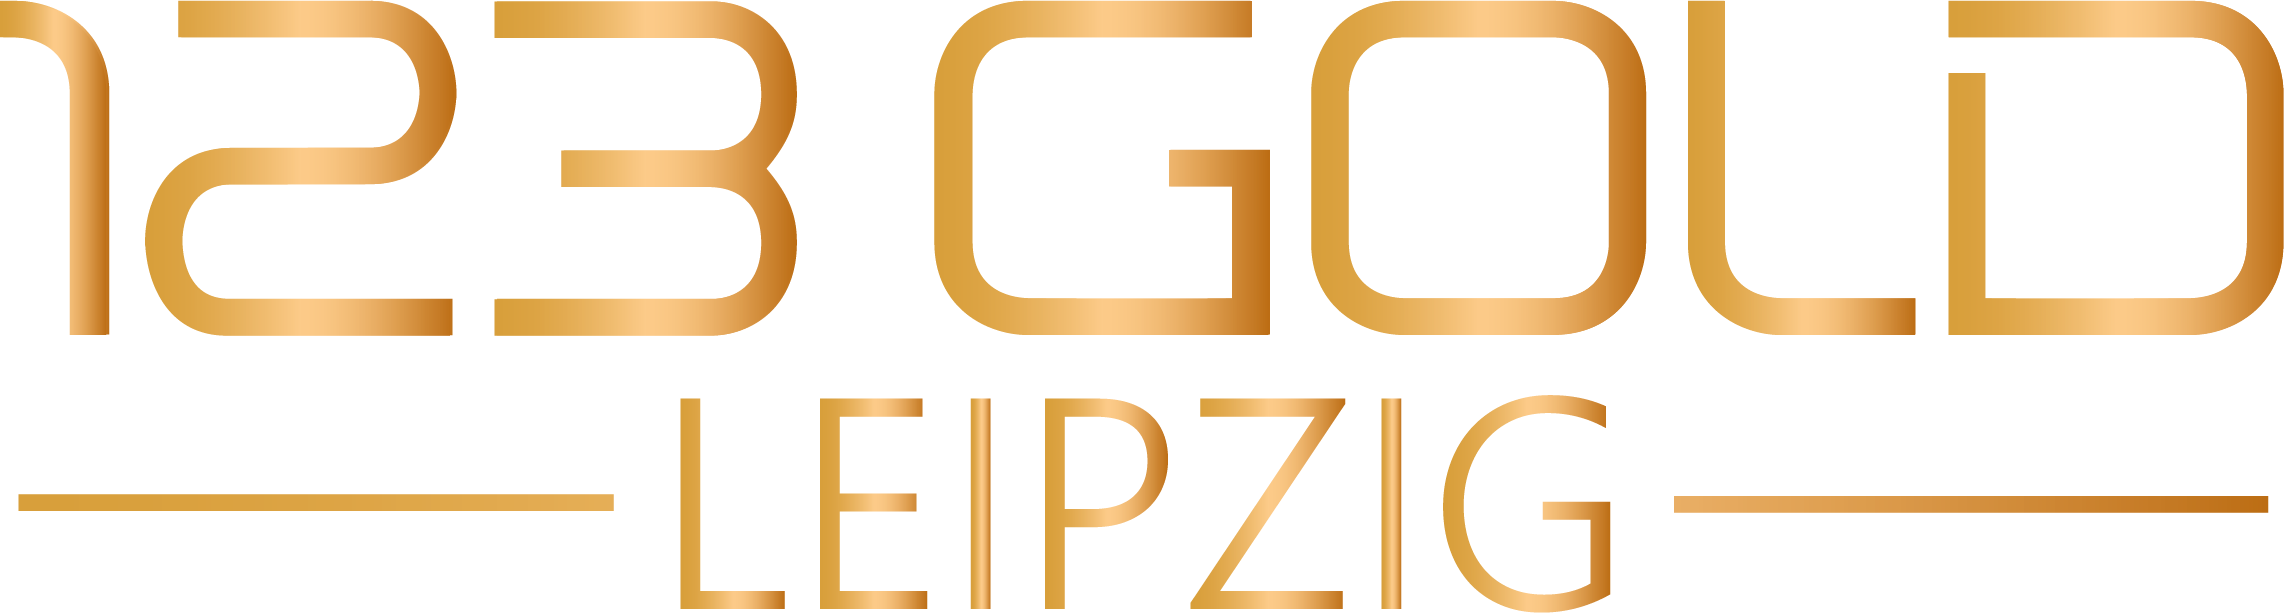 Logo 123gold Trauring-Zentrum Leipzig